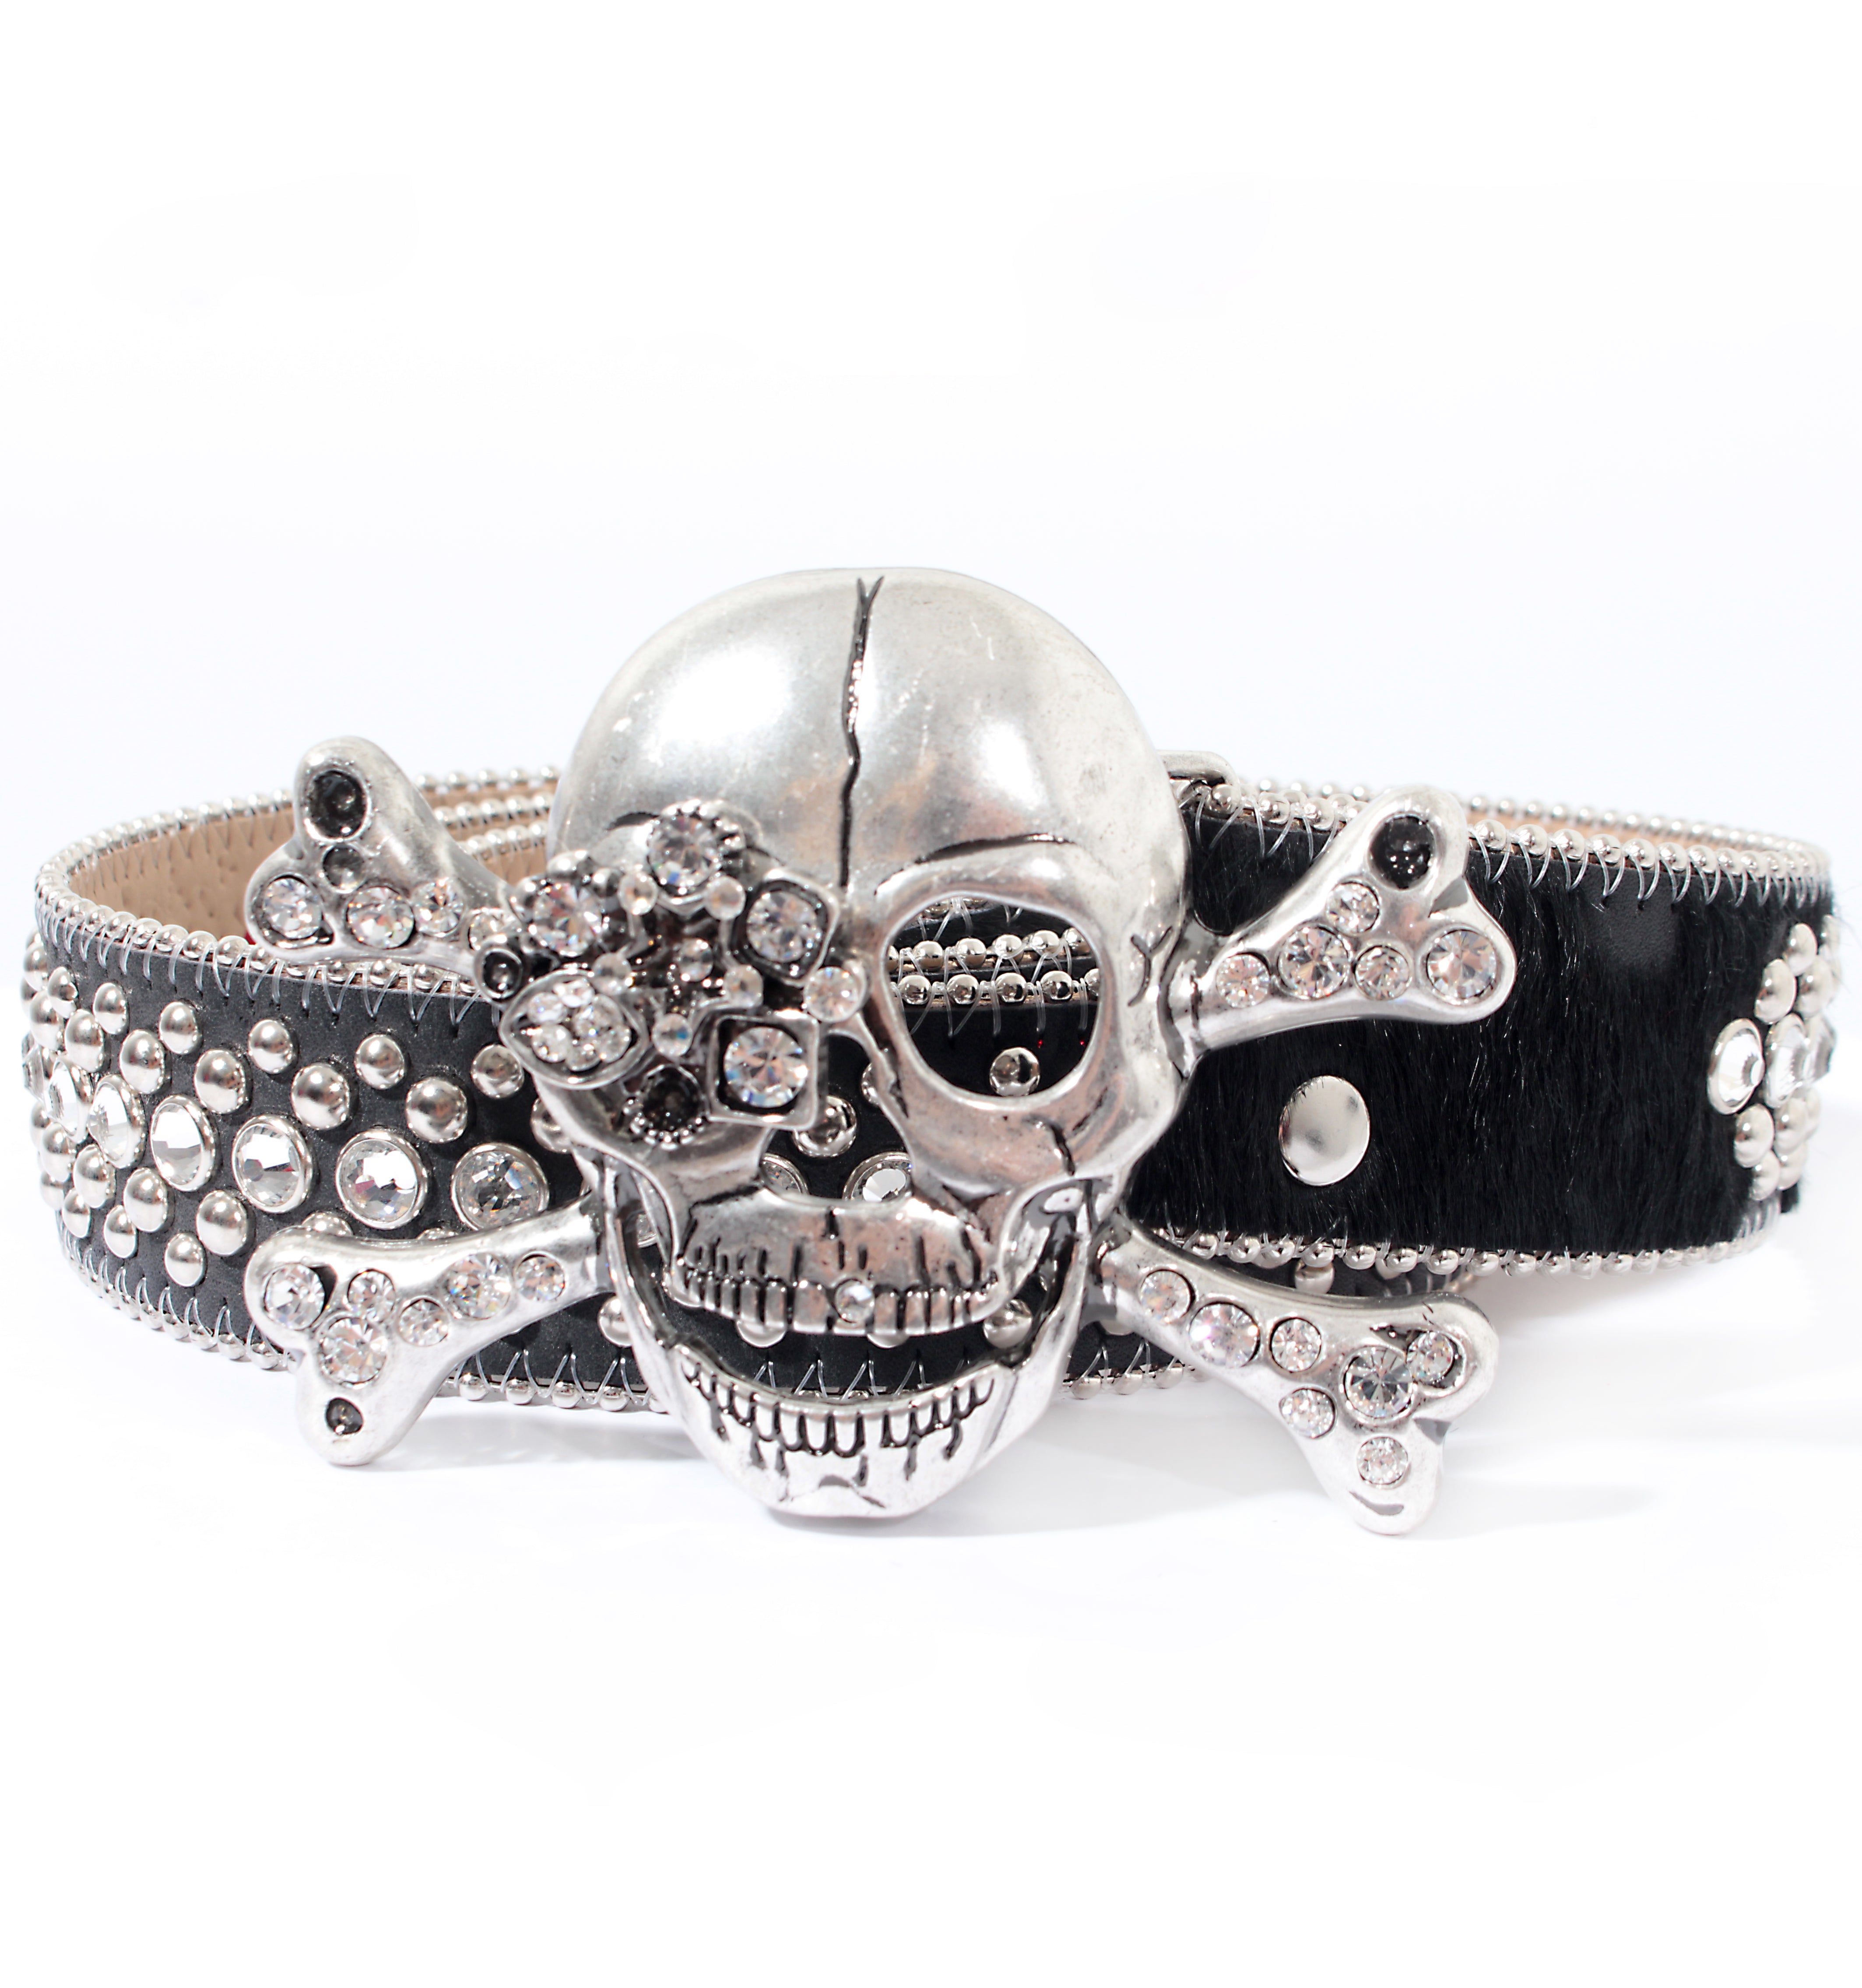 Silver Skull bb Simon Belt for Sale in Las Vegas, NV - OfferUp